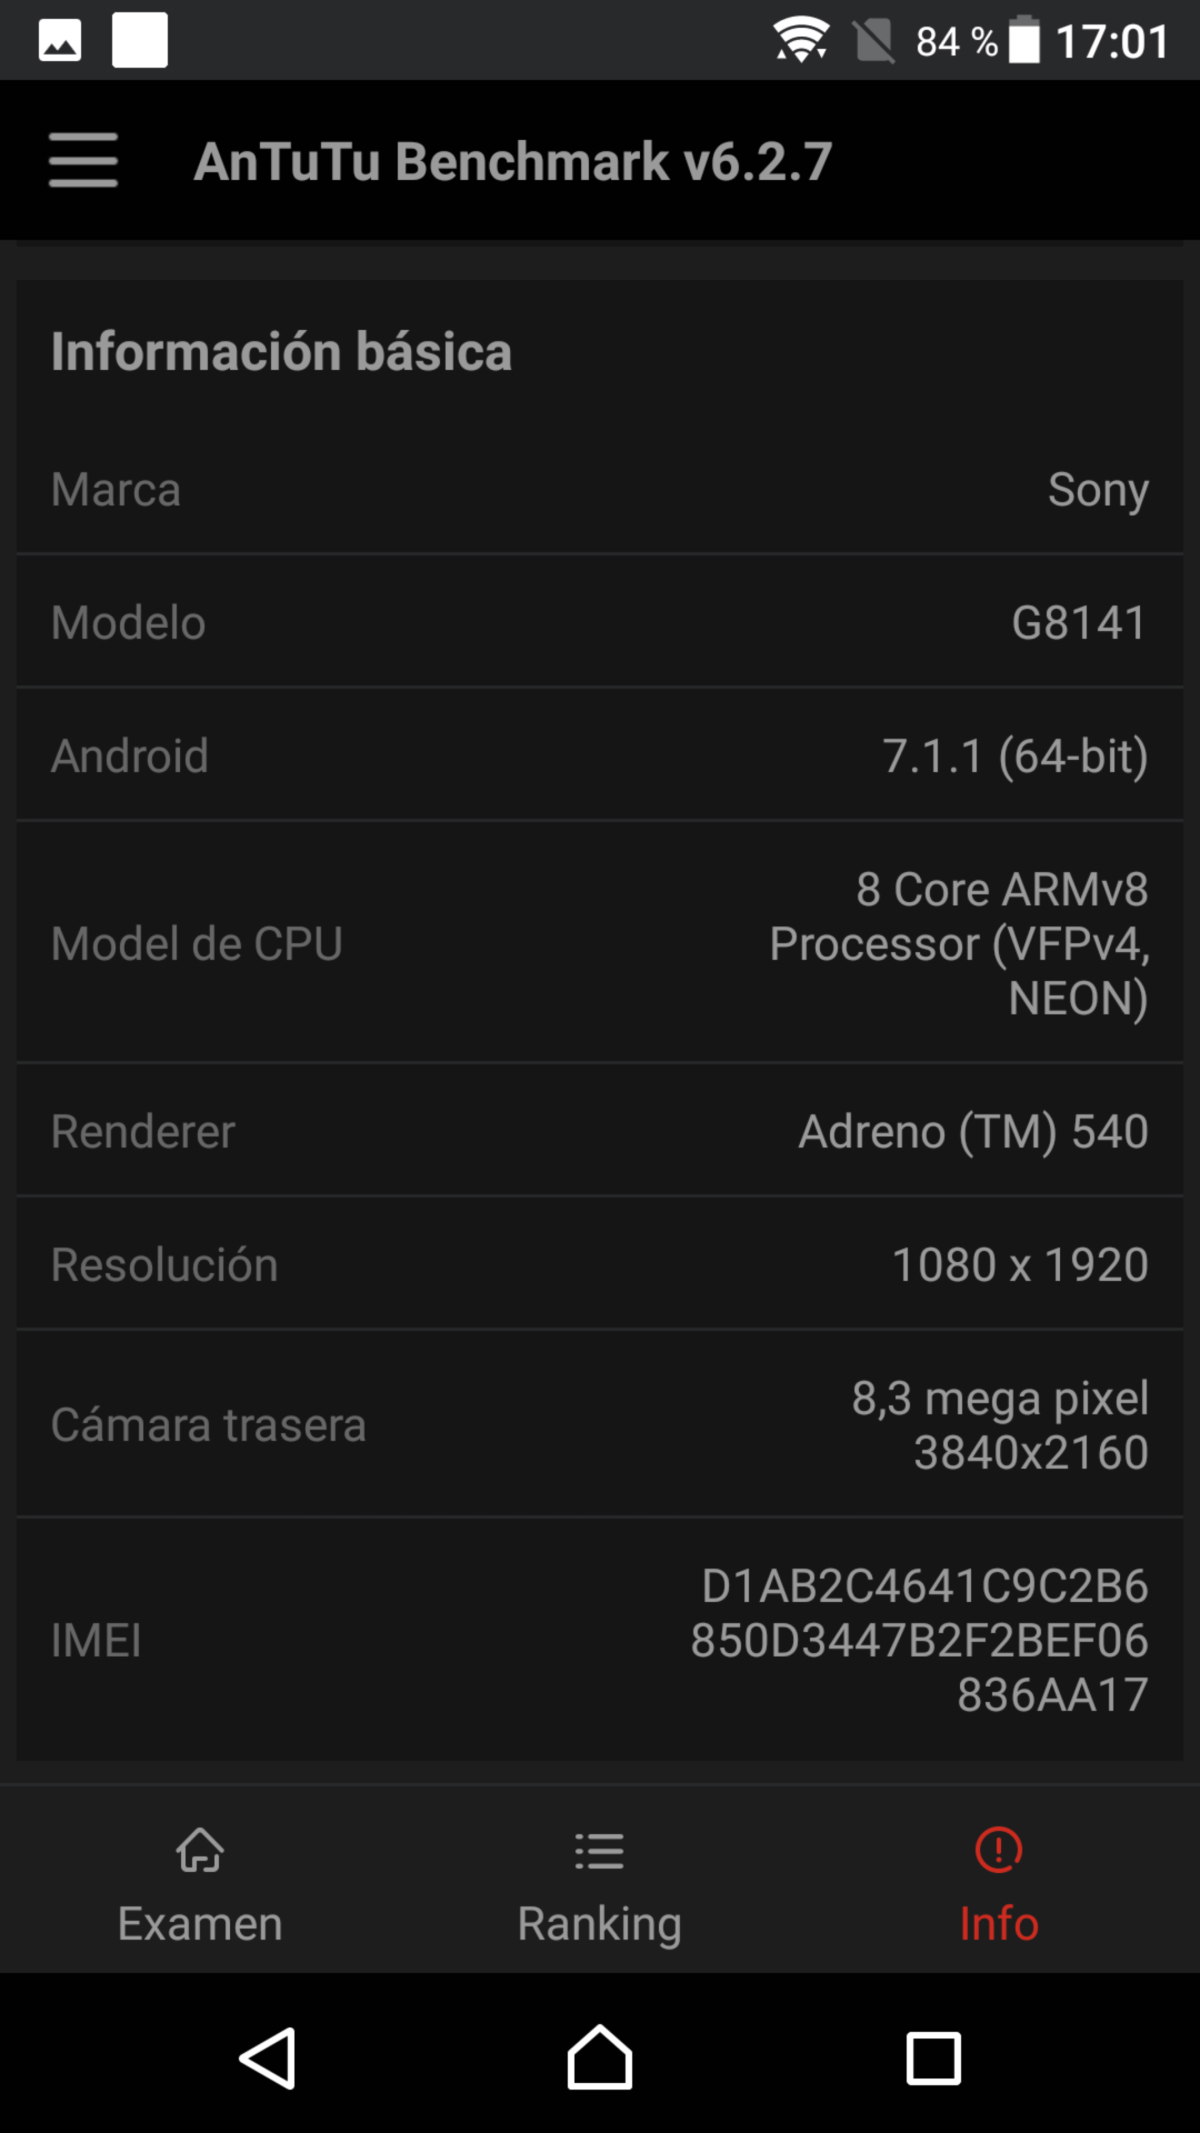 Sony Xperia XZ Premium, hemos probado el móvil con pantalla 4K HDR 38